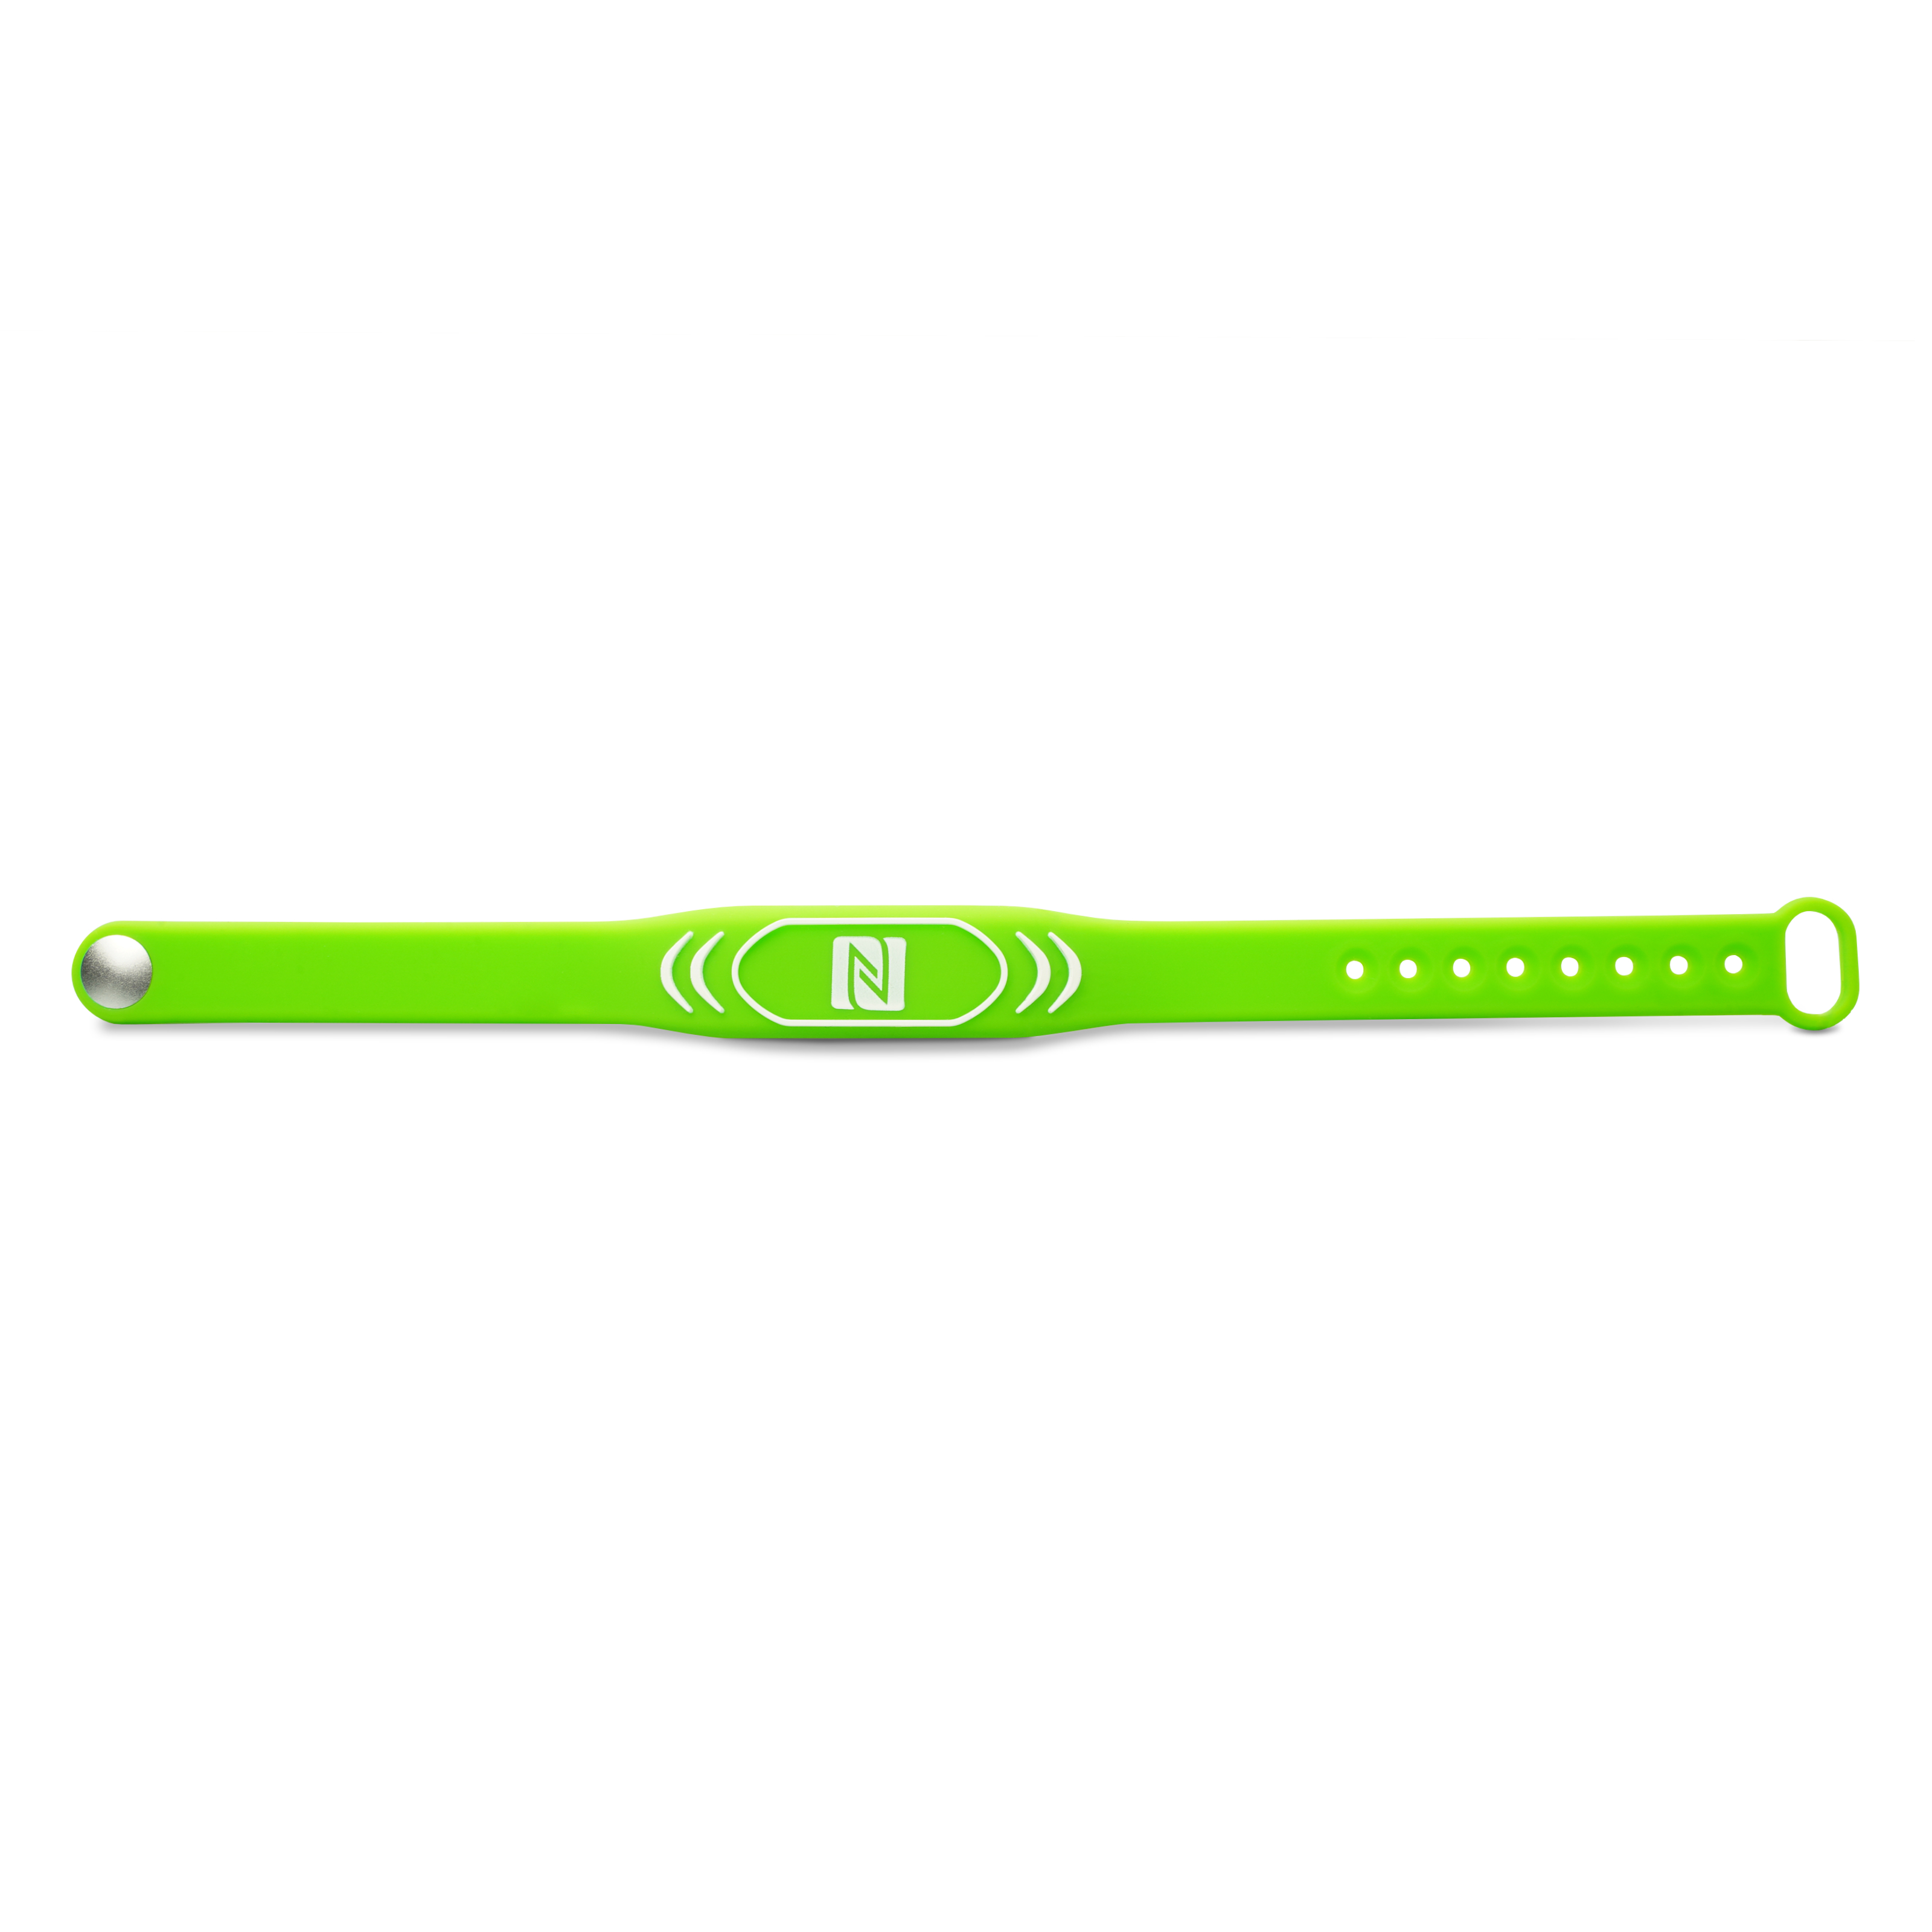 Vorderseite des NFC Armband in grün